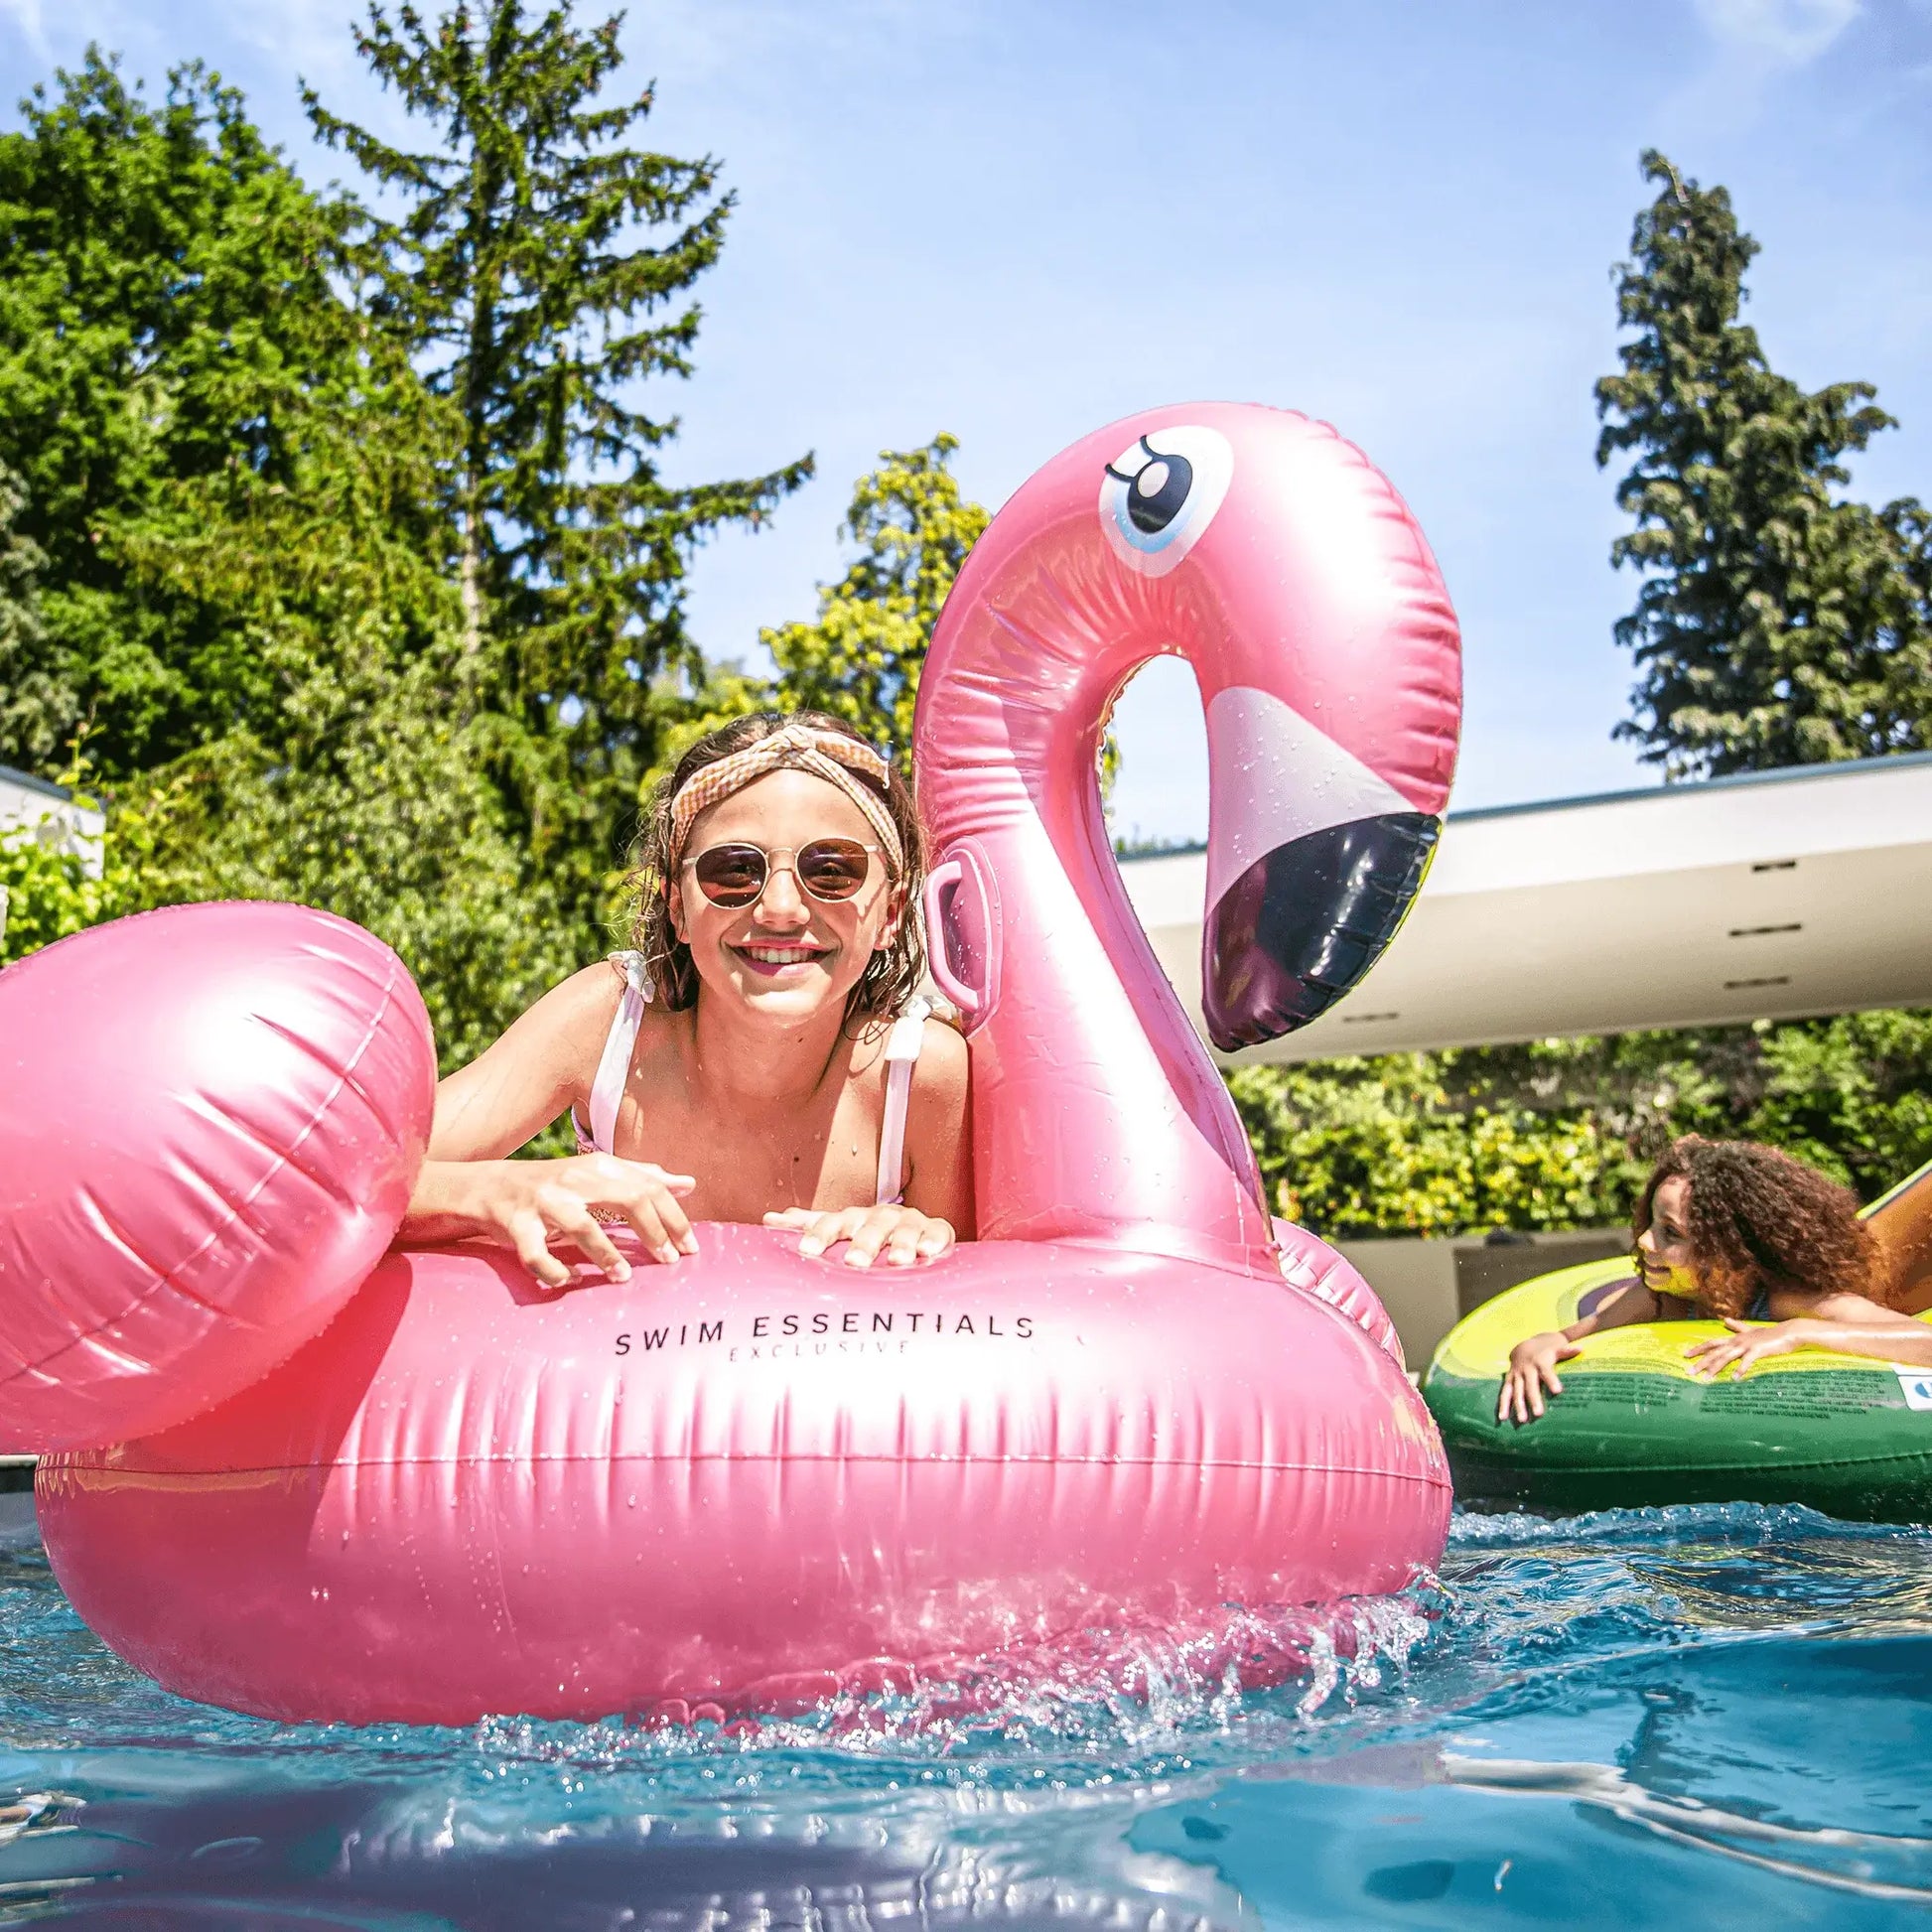 opblaas flamingo zwembad rose goud roze opblaas artikelen zwembad ride on swim essentials sfeerfoto meisjes in zwembad met luchtmatras